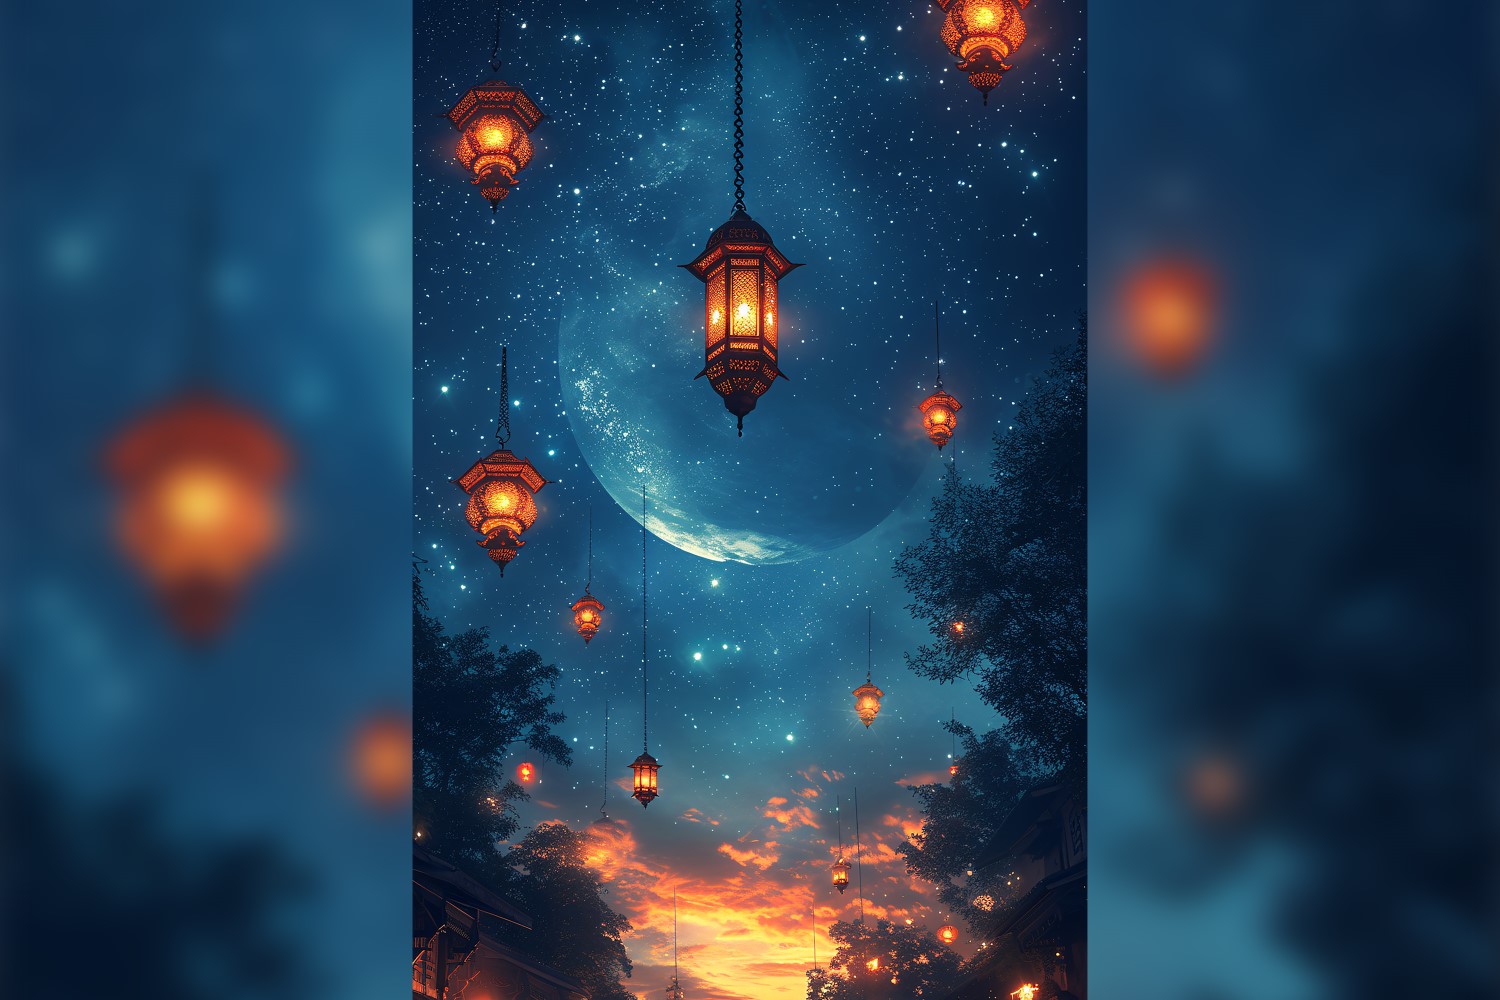 Ramadan Kareem greeting card poster design with lantern & star background